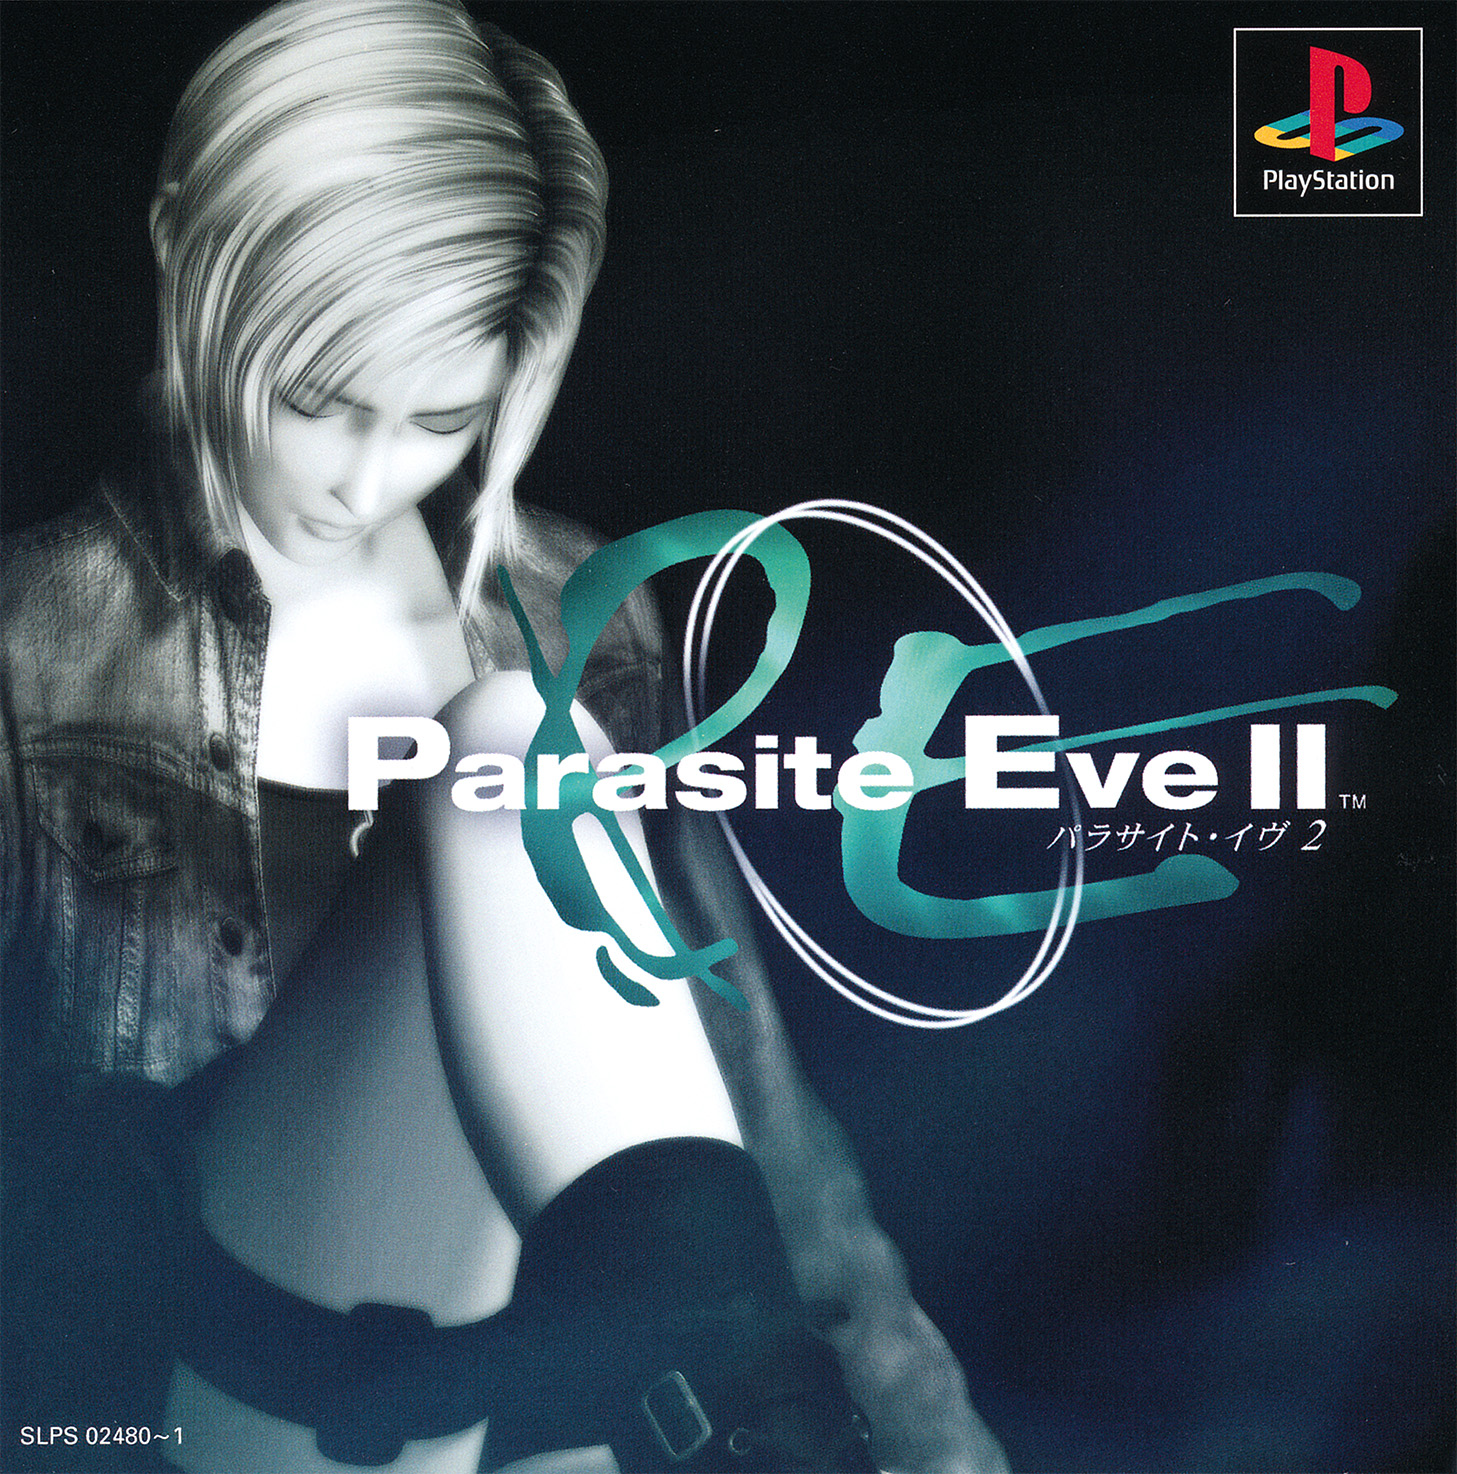 Parasite Eve II - PlayStation - Nerd Bacon Magazine